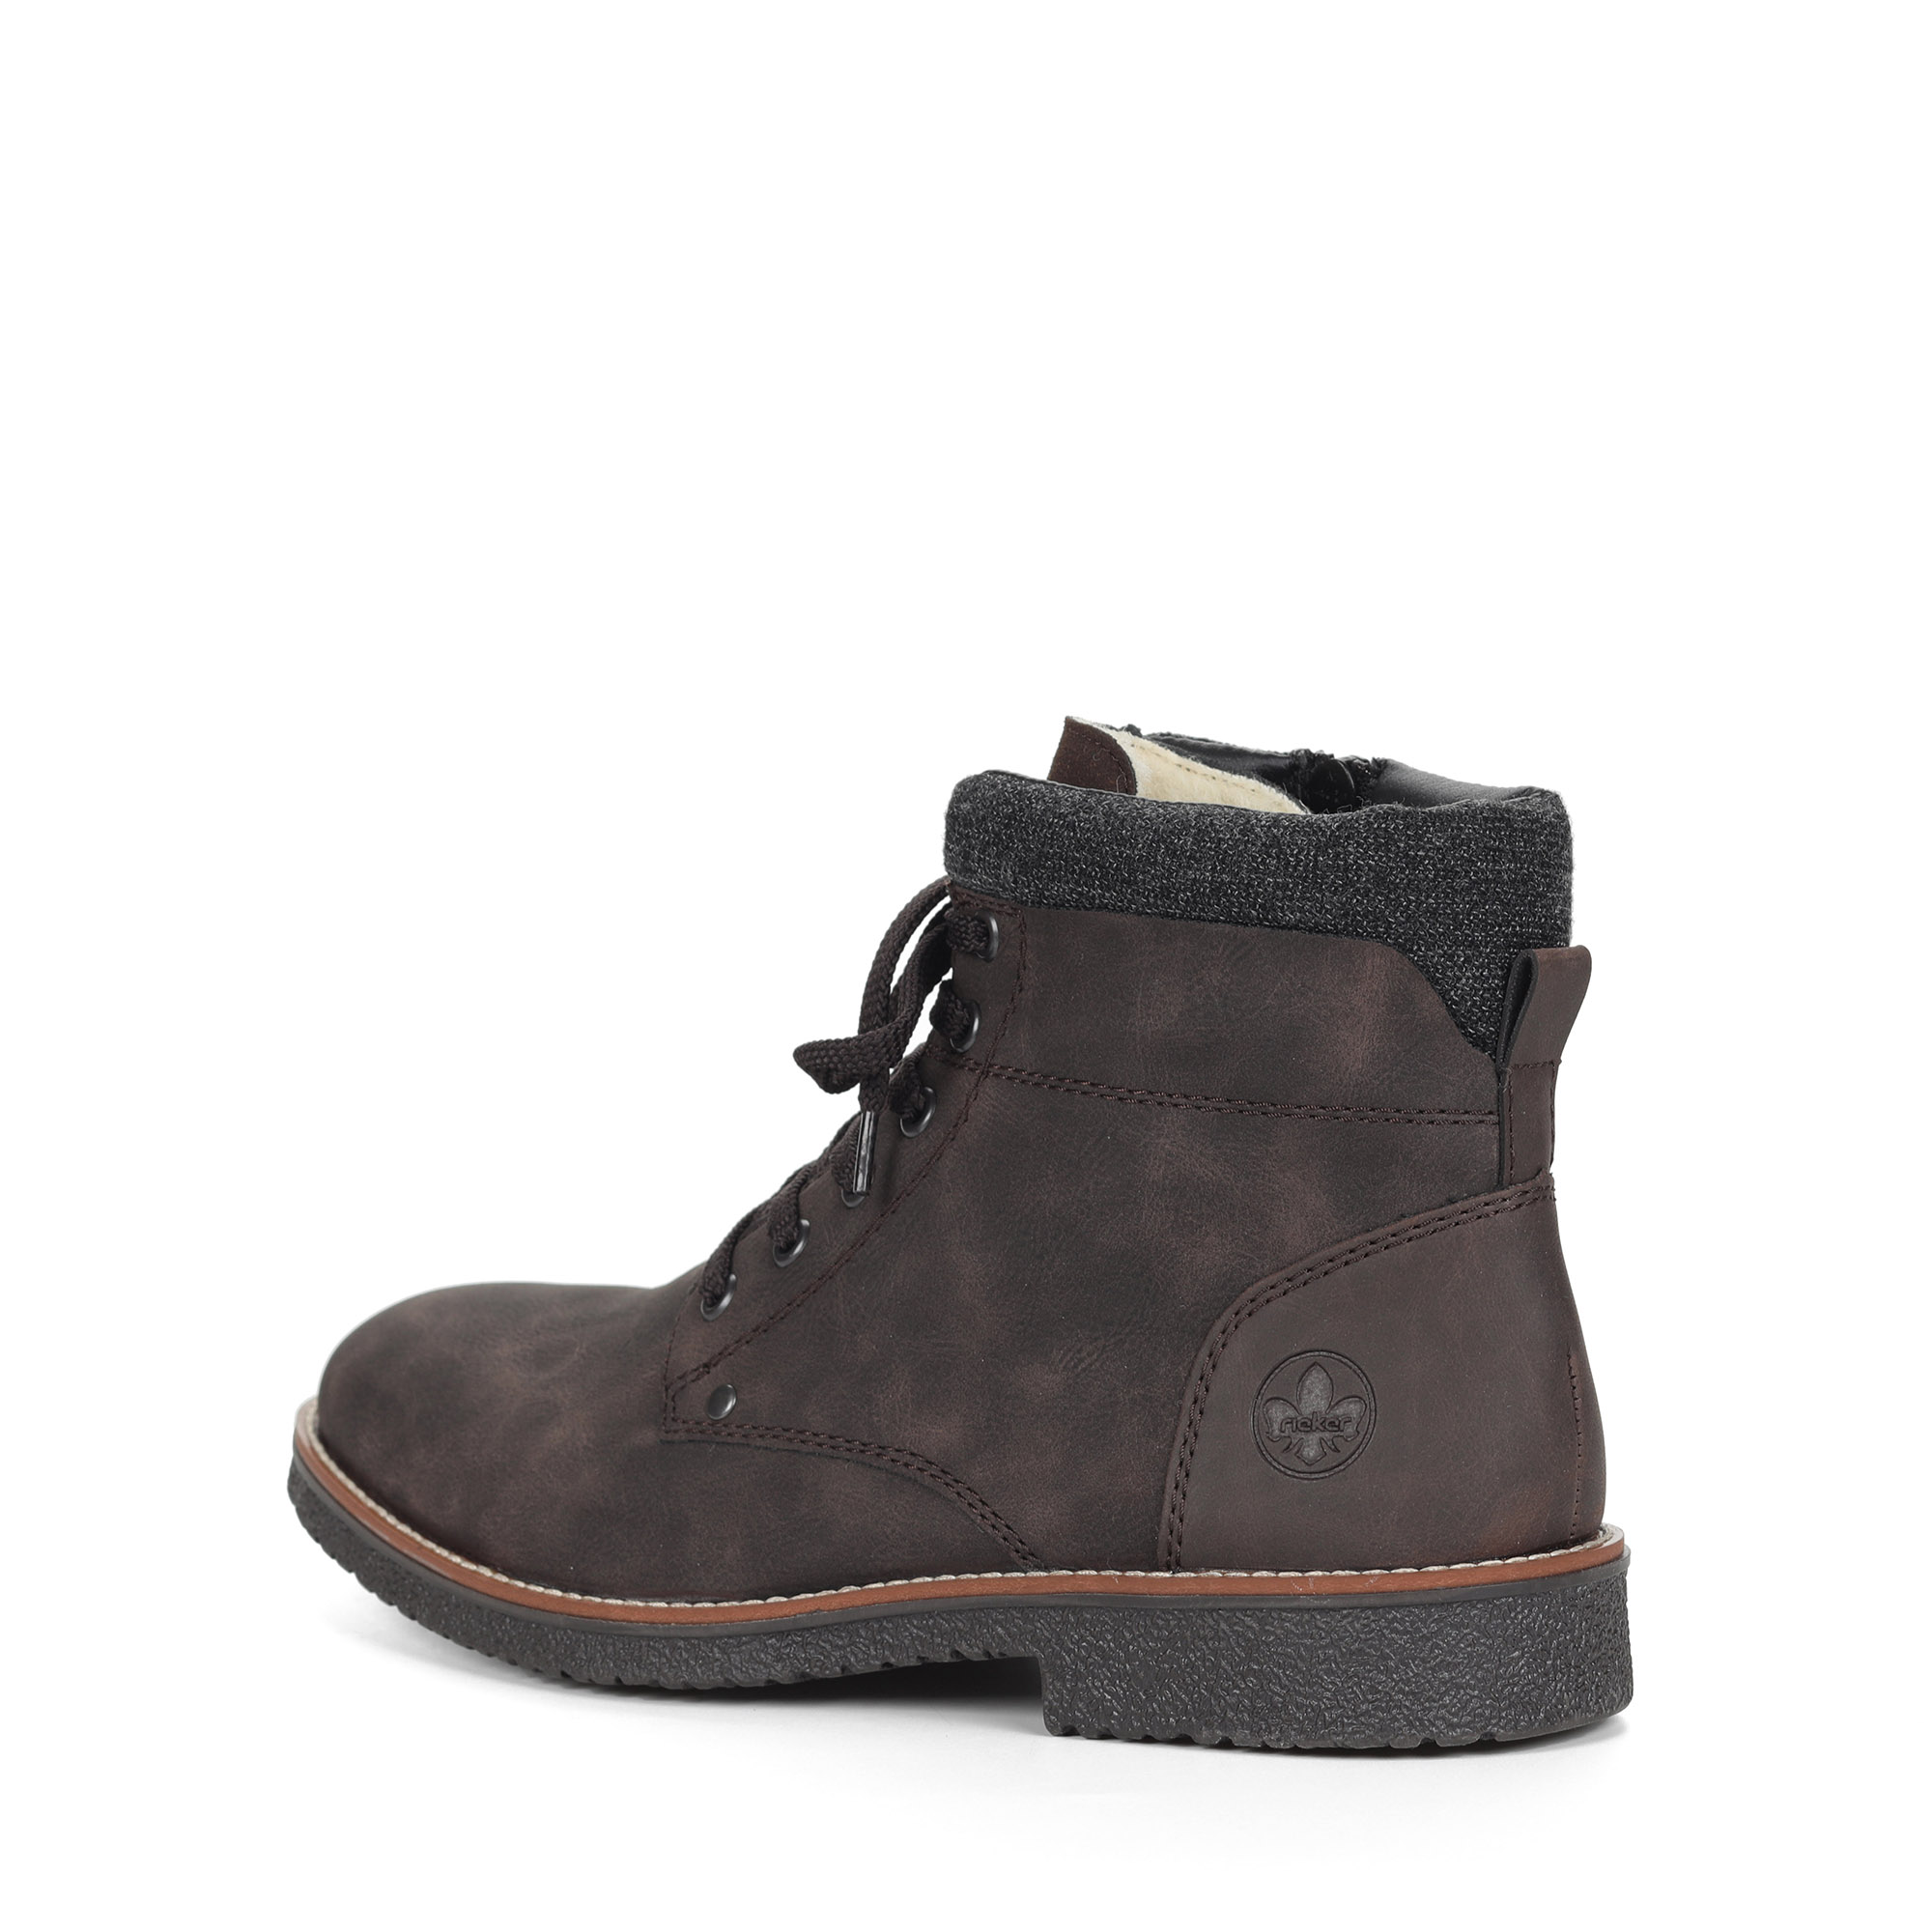 Коричневые ботинки из экокожи на подкладке из натуральной шерсти на шнурках Rieker, размер 41, цвет коричневый - фото 4